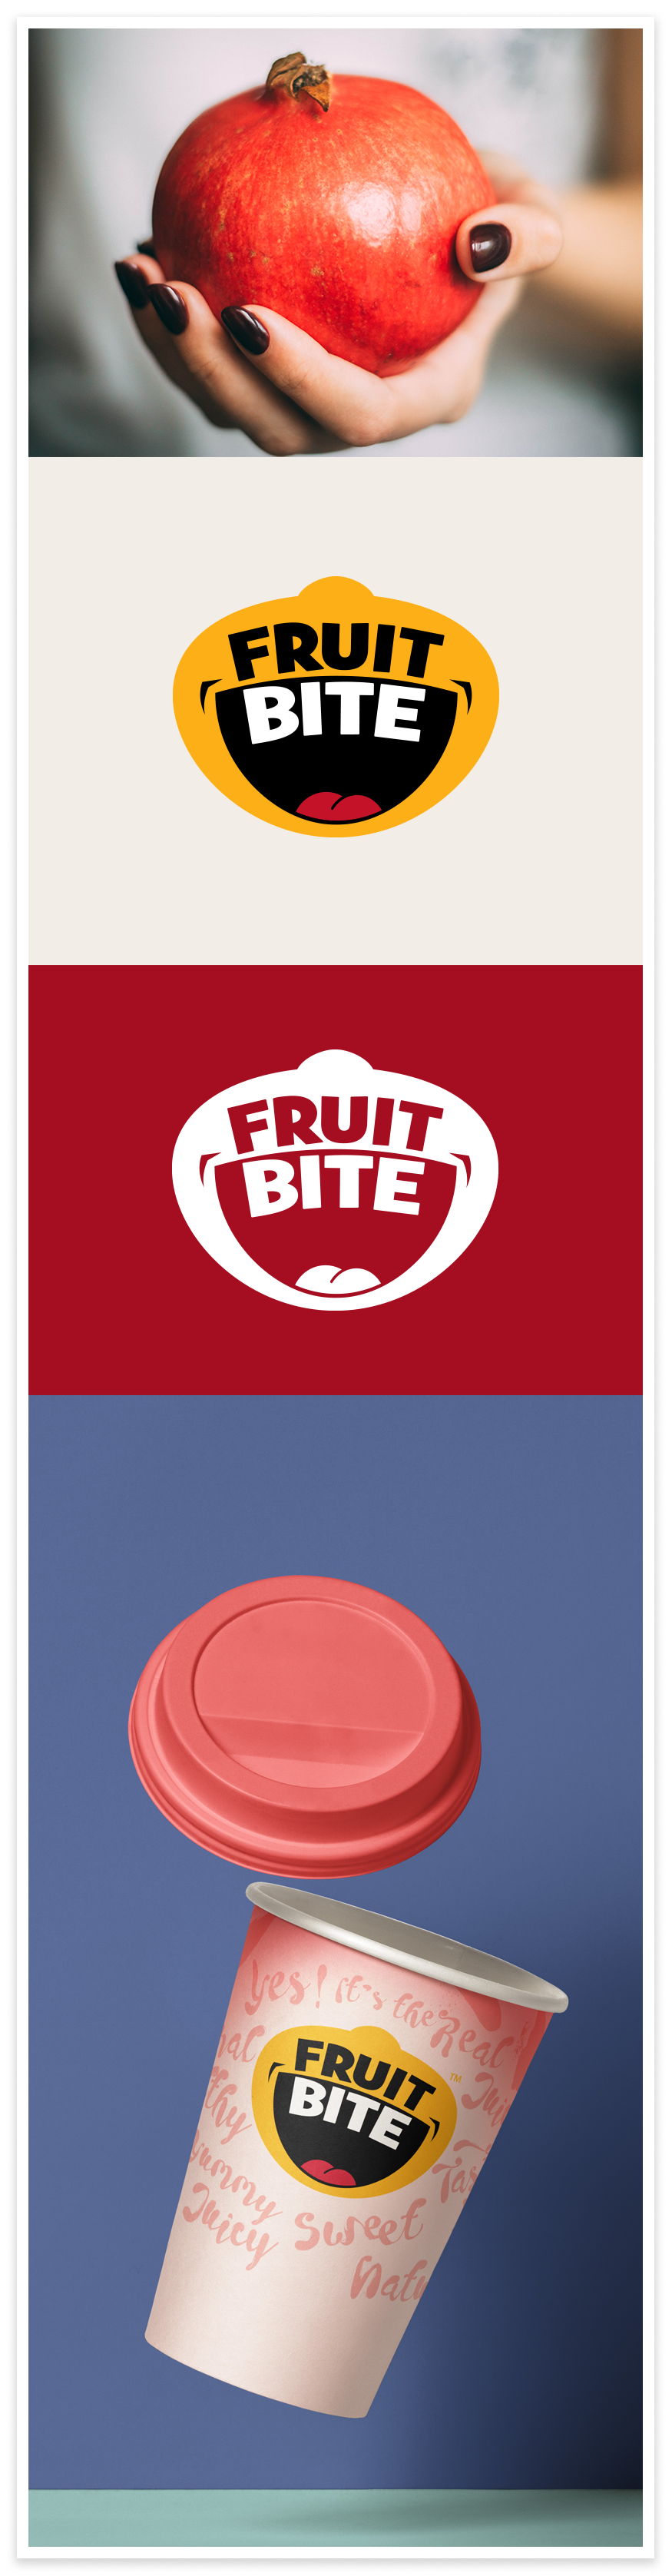 FruitBite_Branding_01